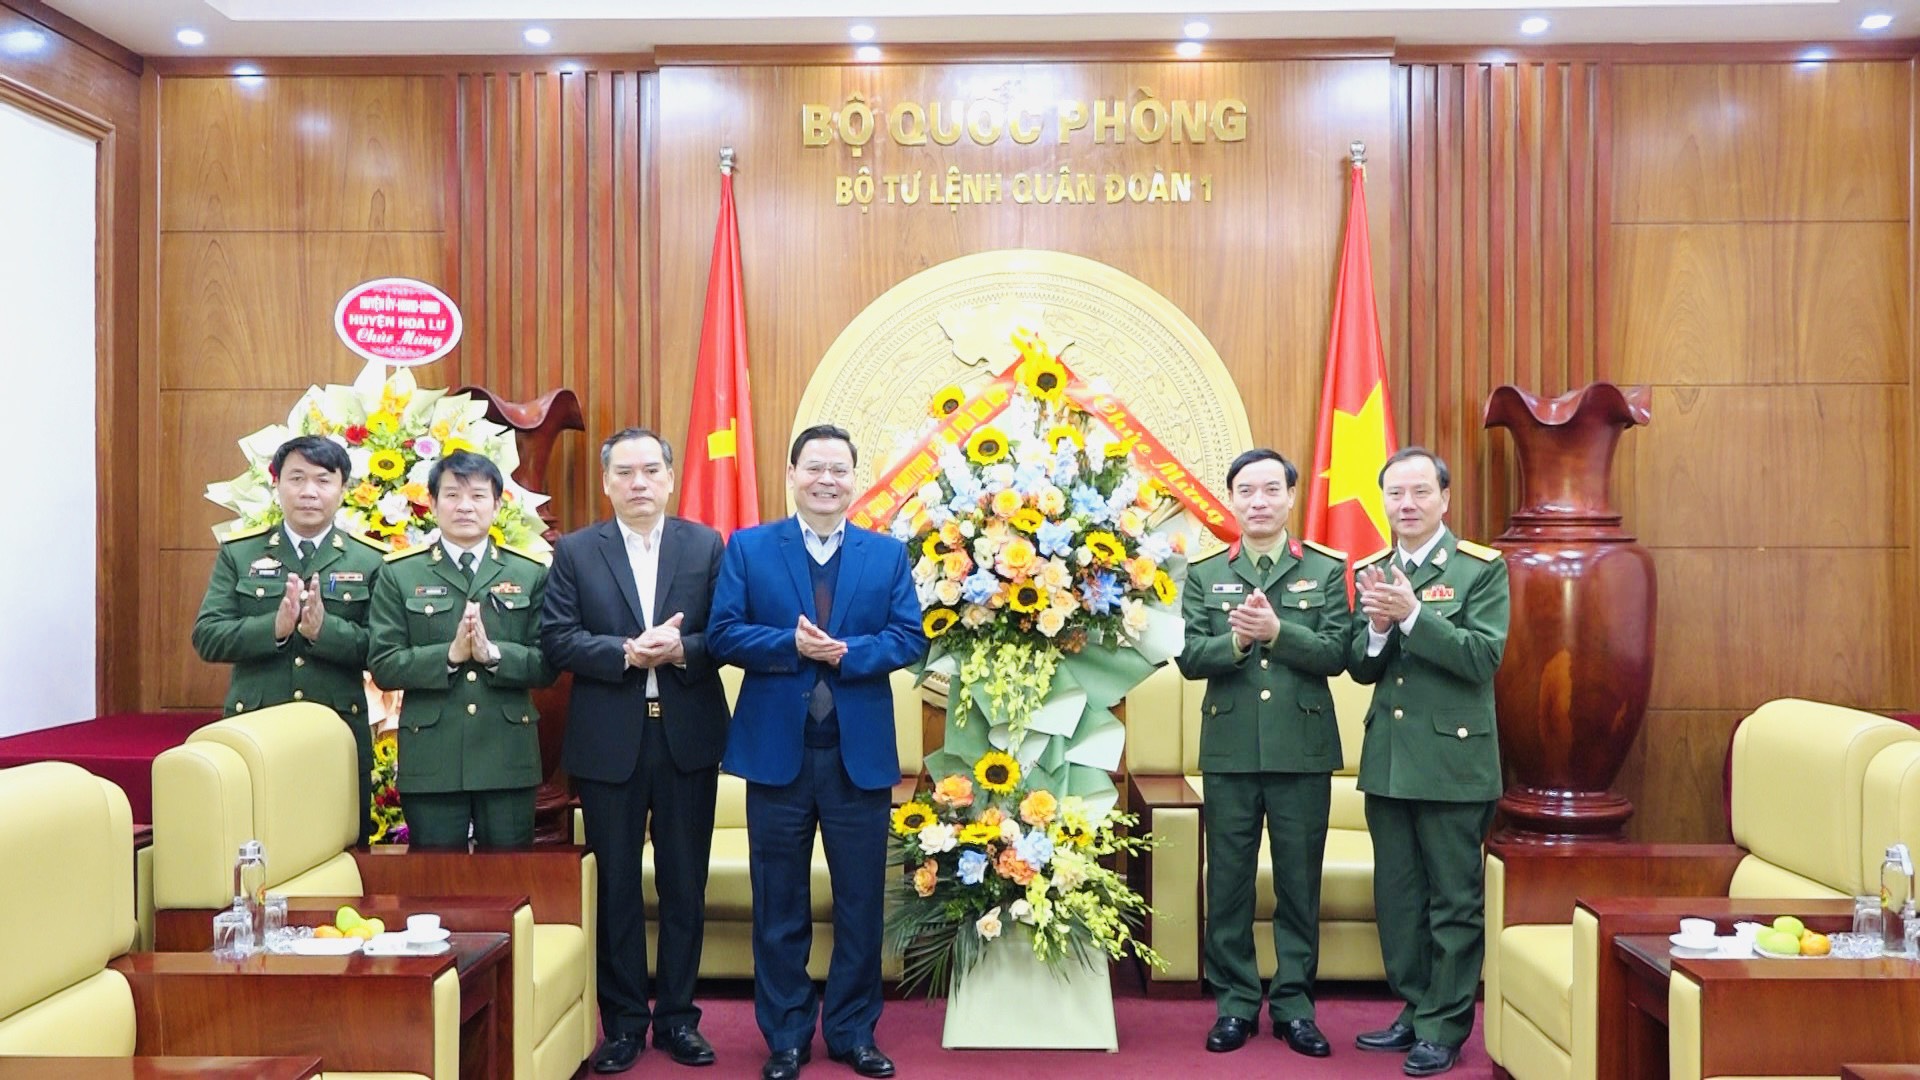 Đoàn đại biểu lãnh đạo thành phố thăm và chúc mừng các đơn vị quân đội nhân kỷ niệm 78 năm ngày thành lập Quân đội nhân dân Việt Nam